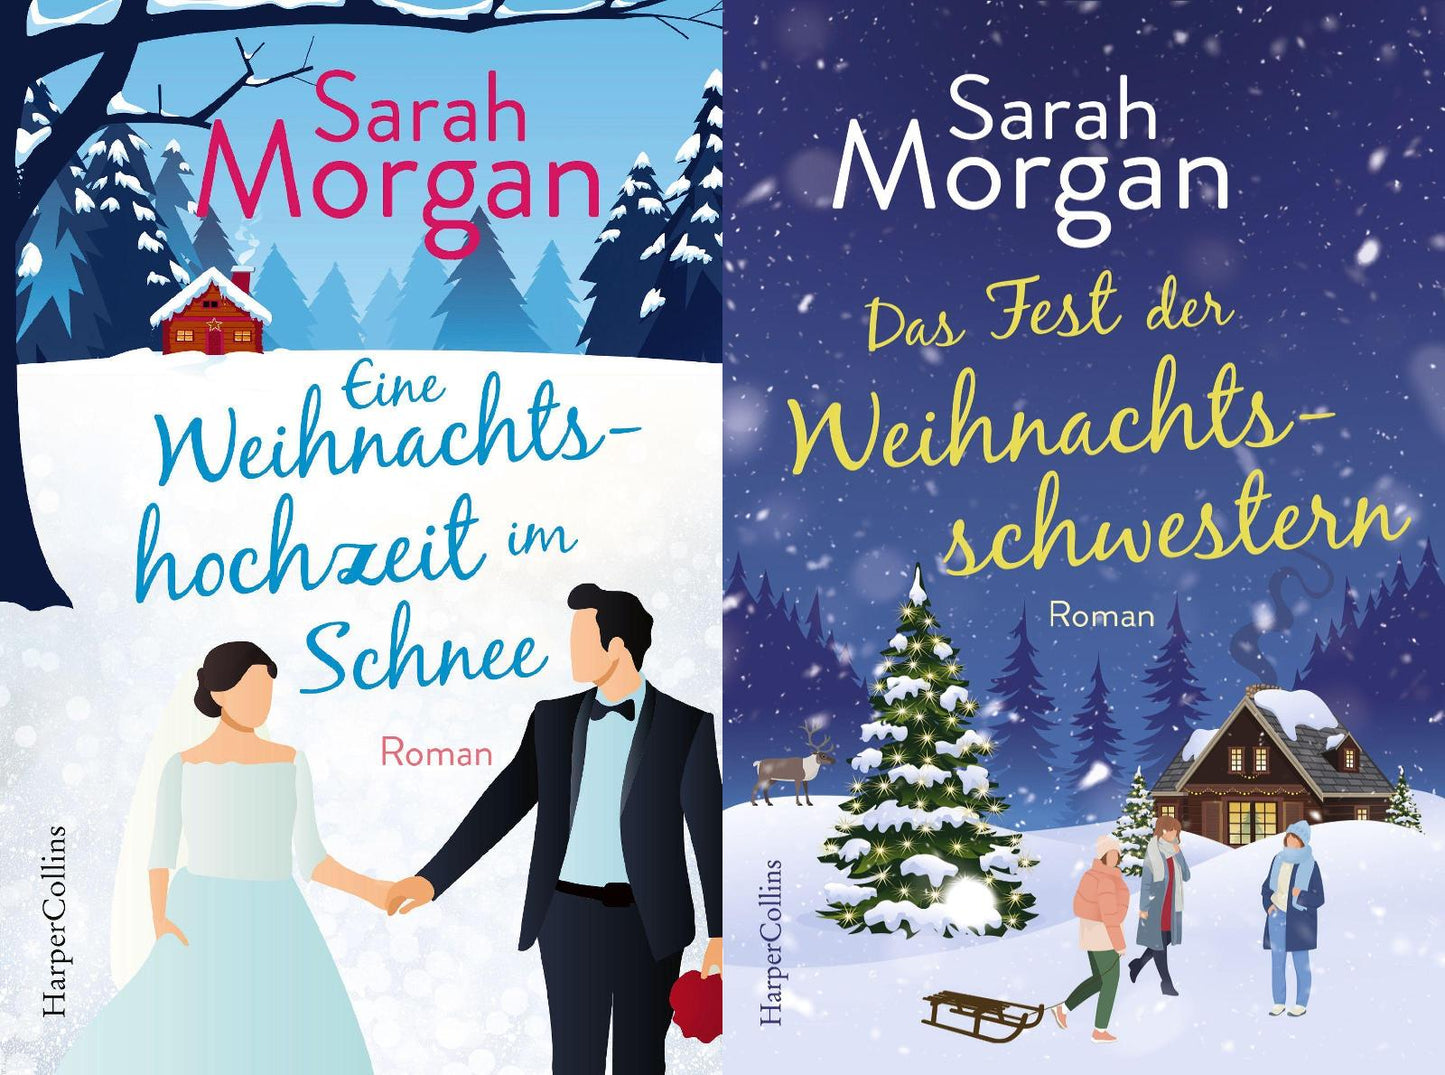 2 wunderschöne Weihnachts-Romane von Sarah Morgan + 1 exklusives Postkartenset